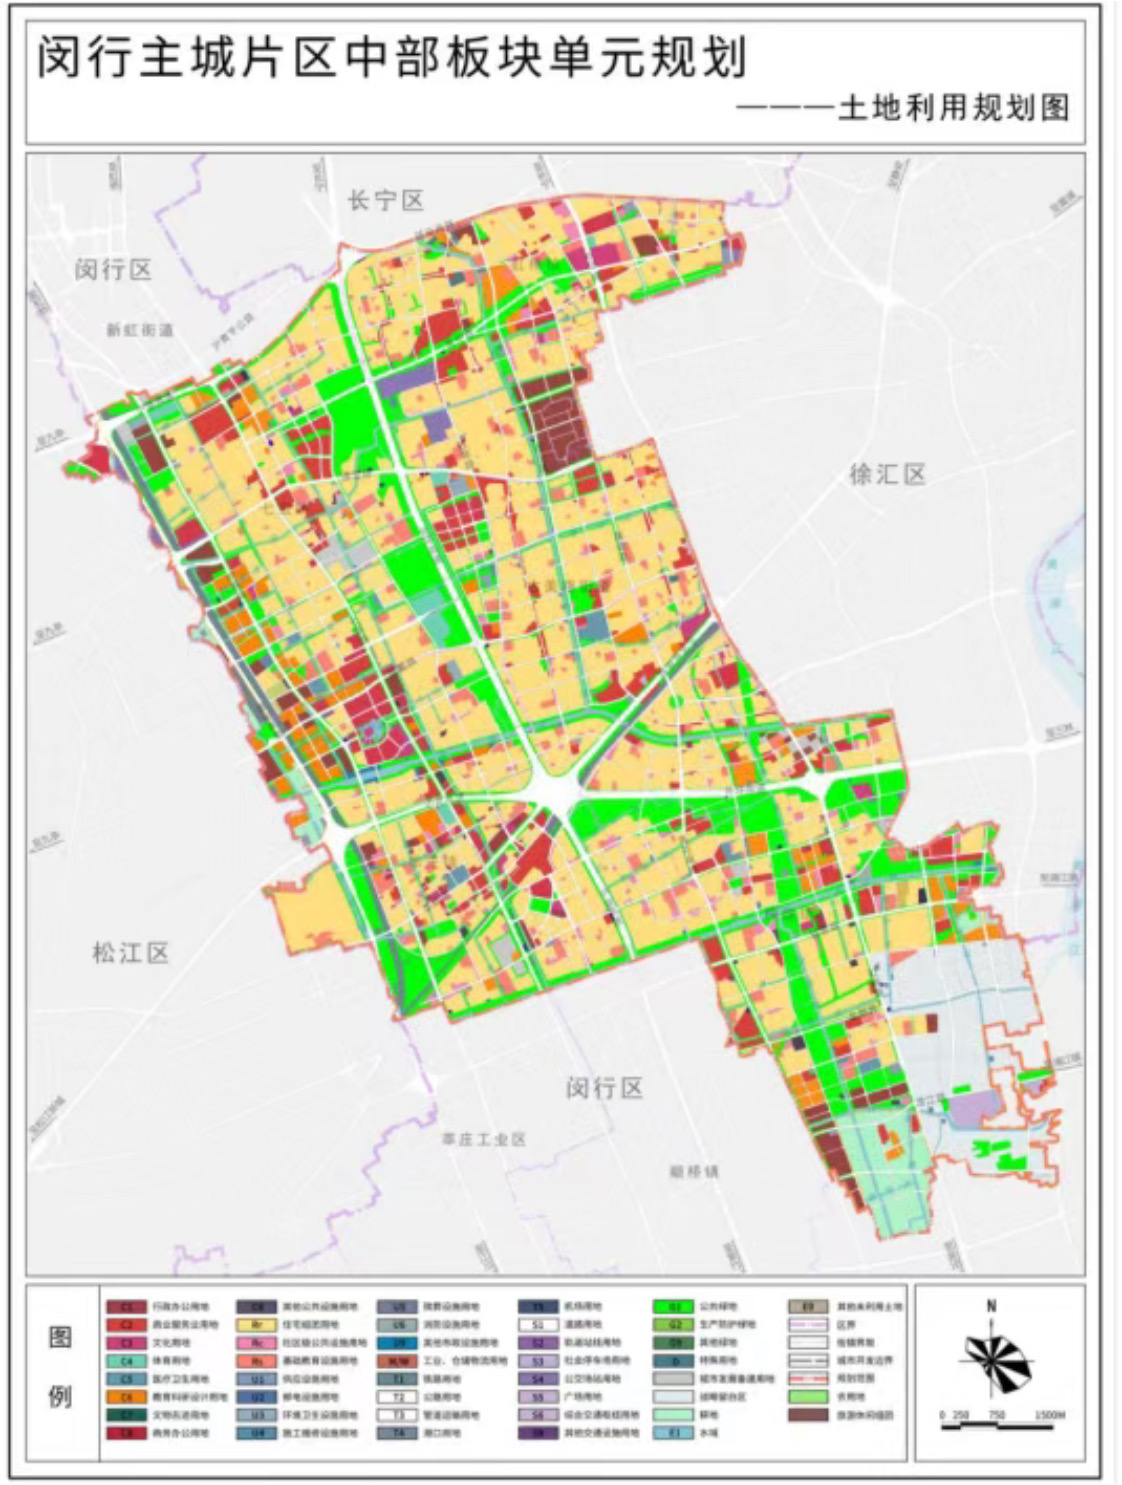 上海闵行主城片区中部板块单元规划获批,涉及5个街镇